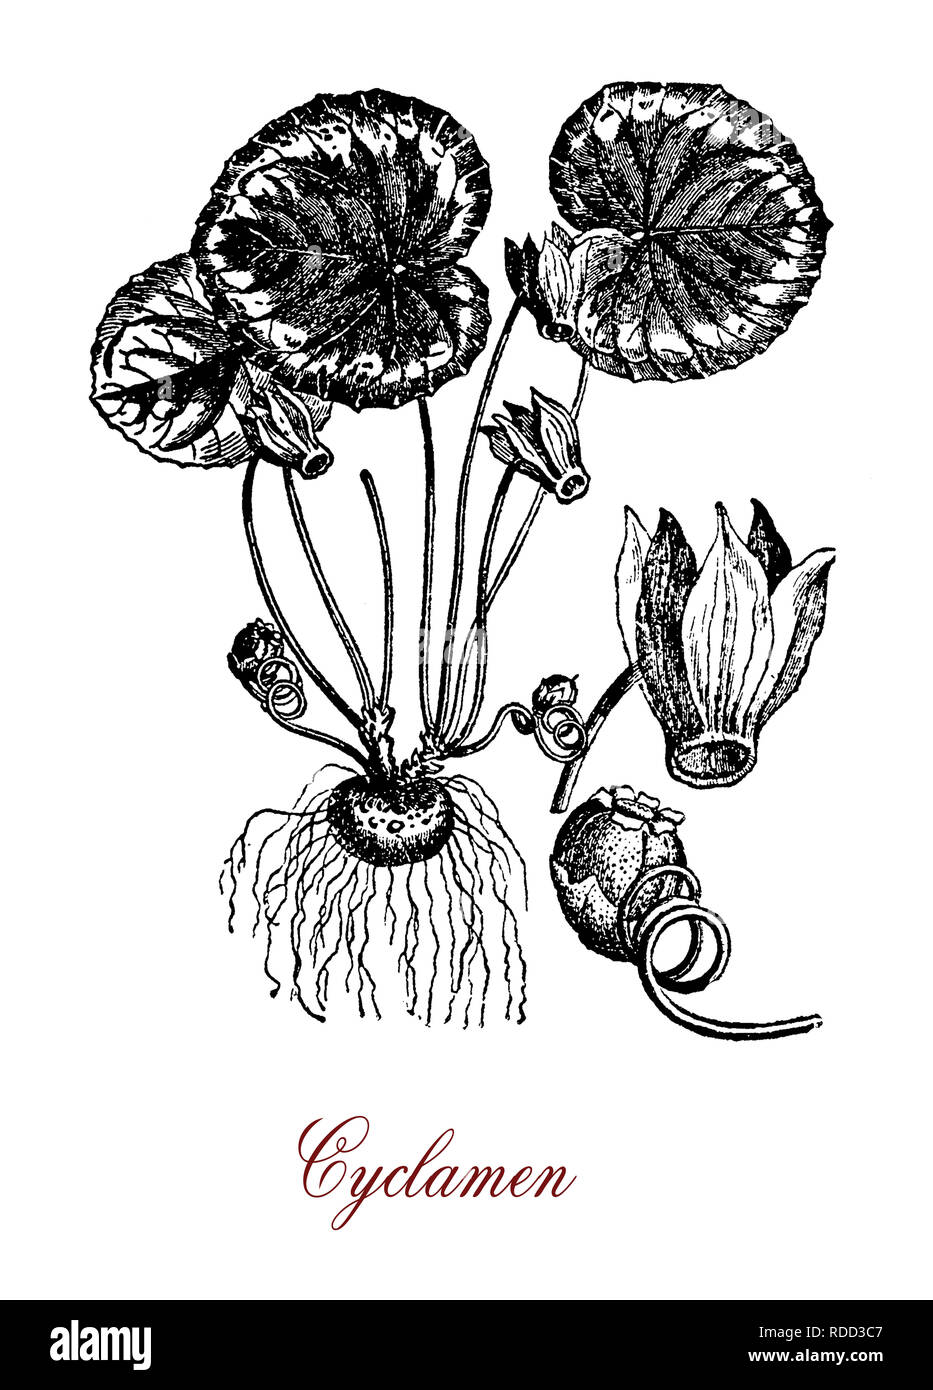 Vintage grabado botánico de Cyclamen, planta perenne con moteado de flores y hojas en forma de corazón de color blanco, rosa o púrpura con la cara hacia abajo Foto de stock